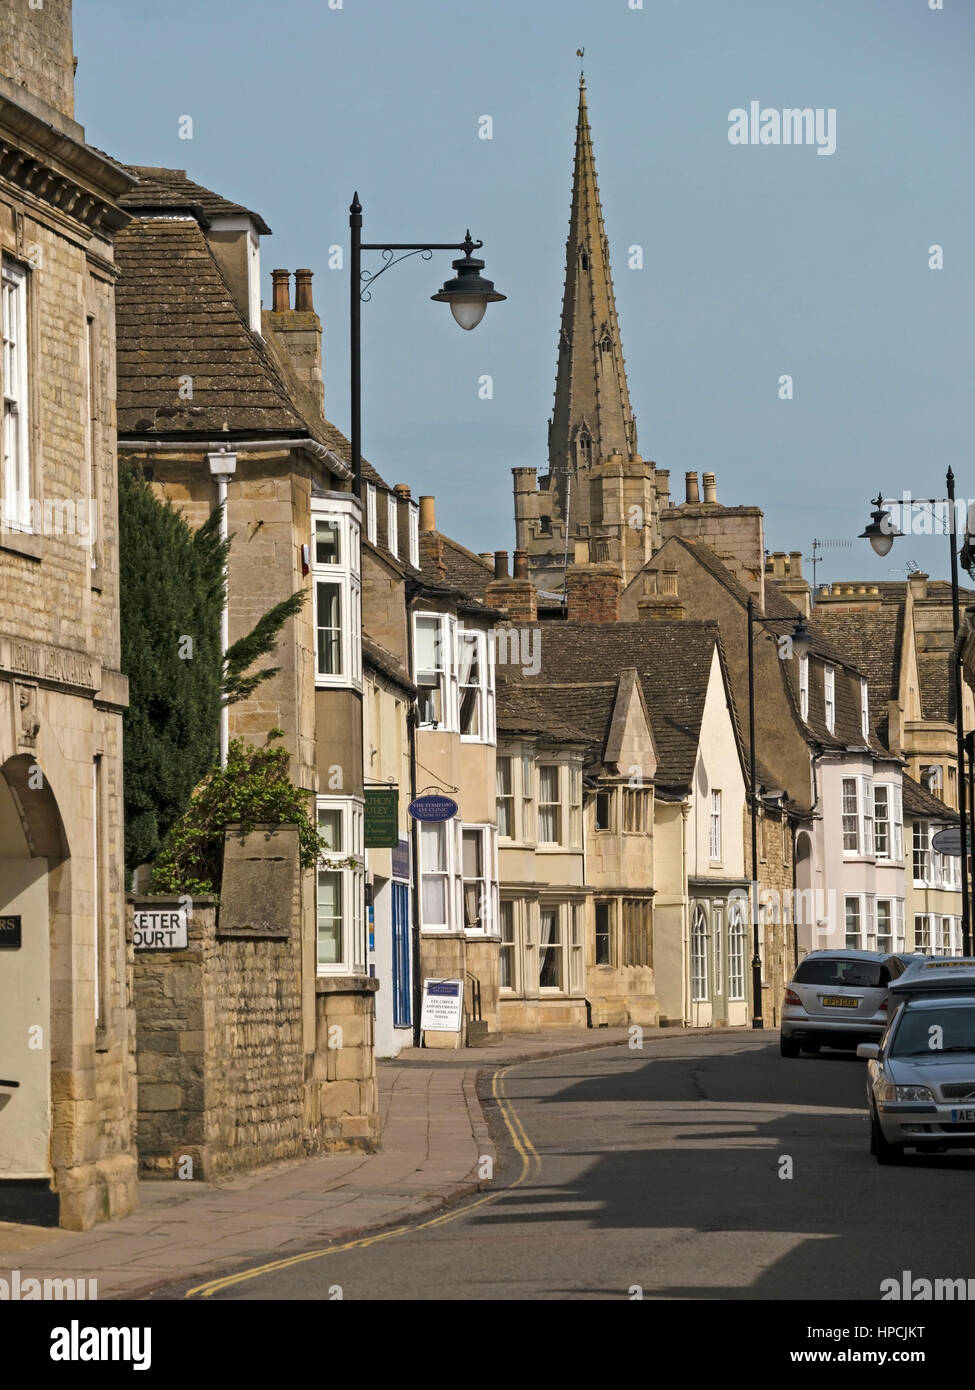 Les bâtiments en pierre et l'église All Saints, St Peter's Street, Stamford, Lincolnshire, Angleterre, RU Banque D'Images